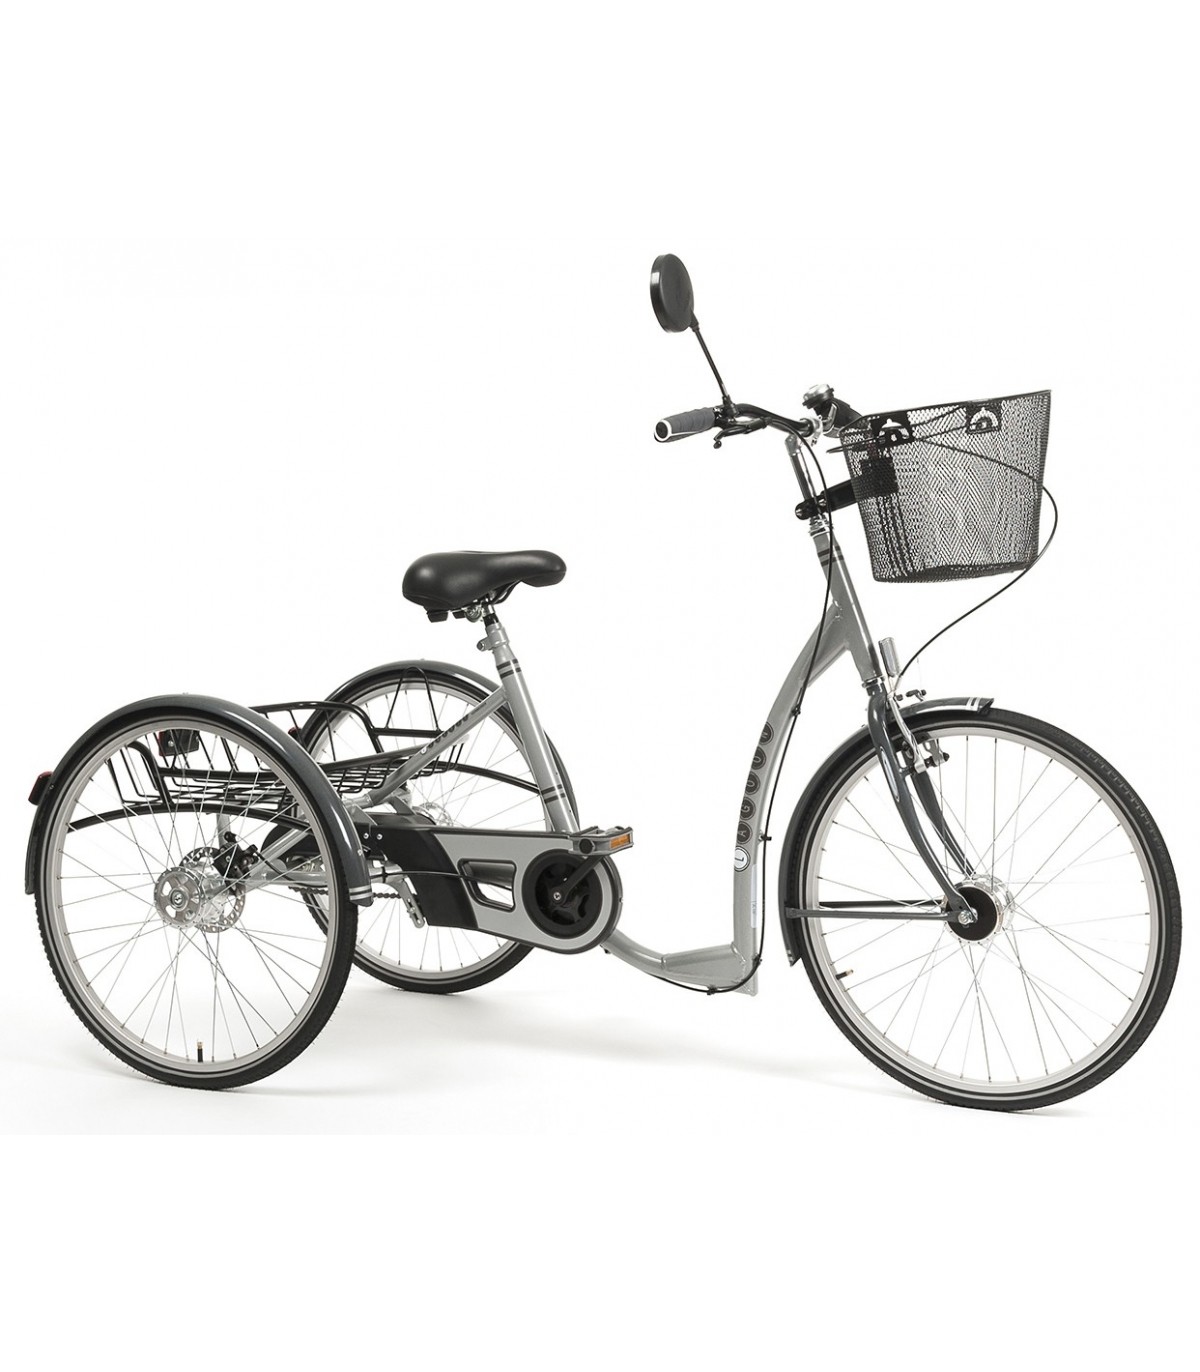 Tricycle adulte, l'accessoire idéal pour les trajets urbains